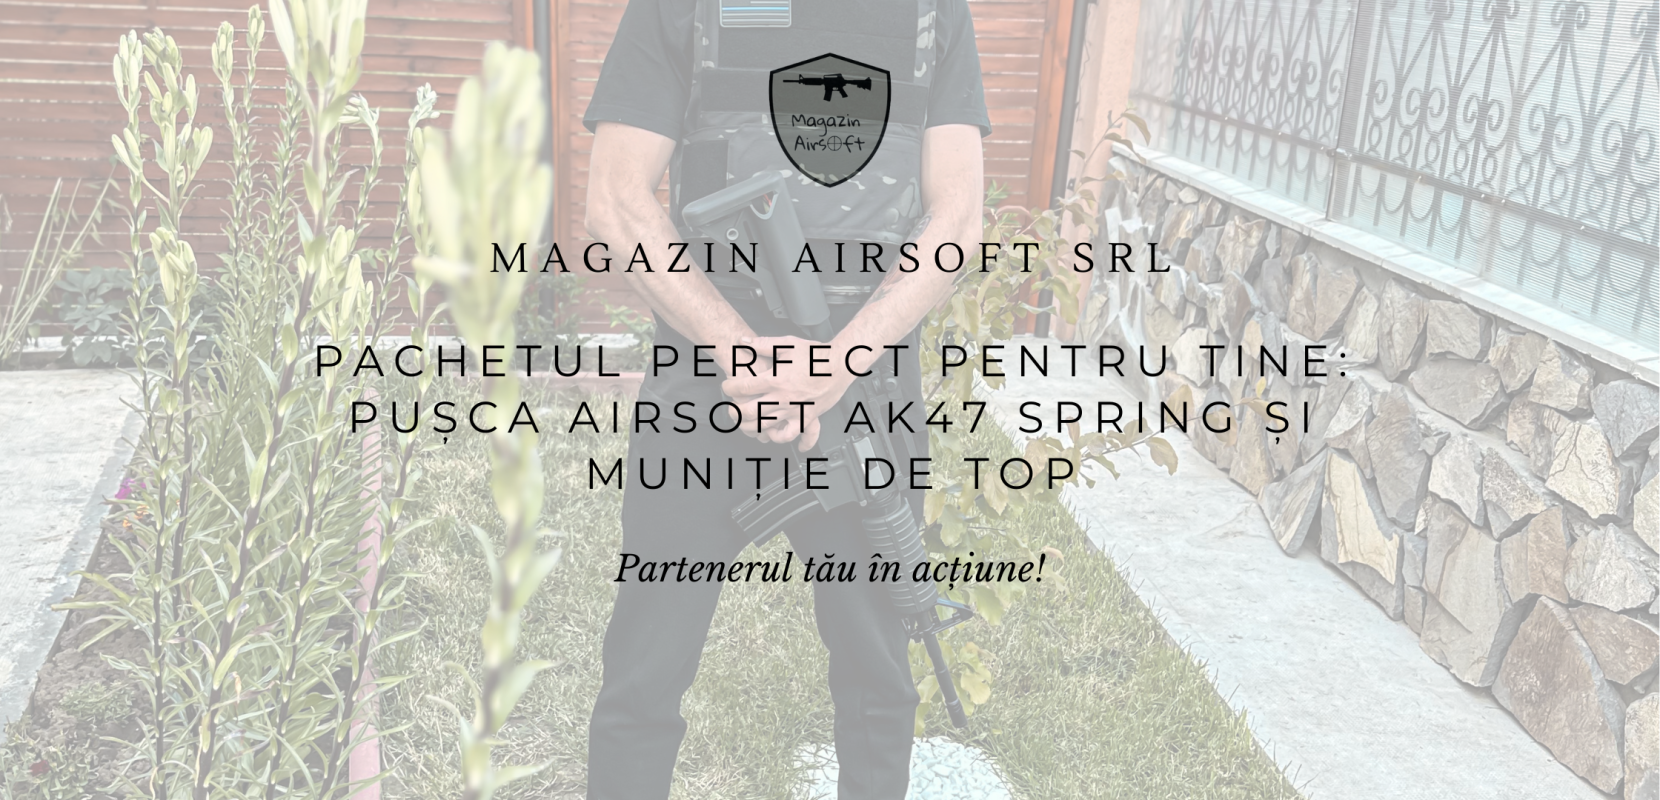 Pachetul perfect pentru Tine Pusca Airsoft AK47 Spring si munitie de top